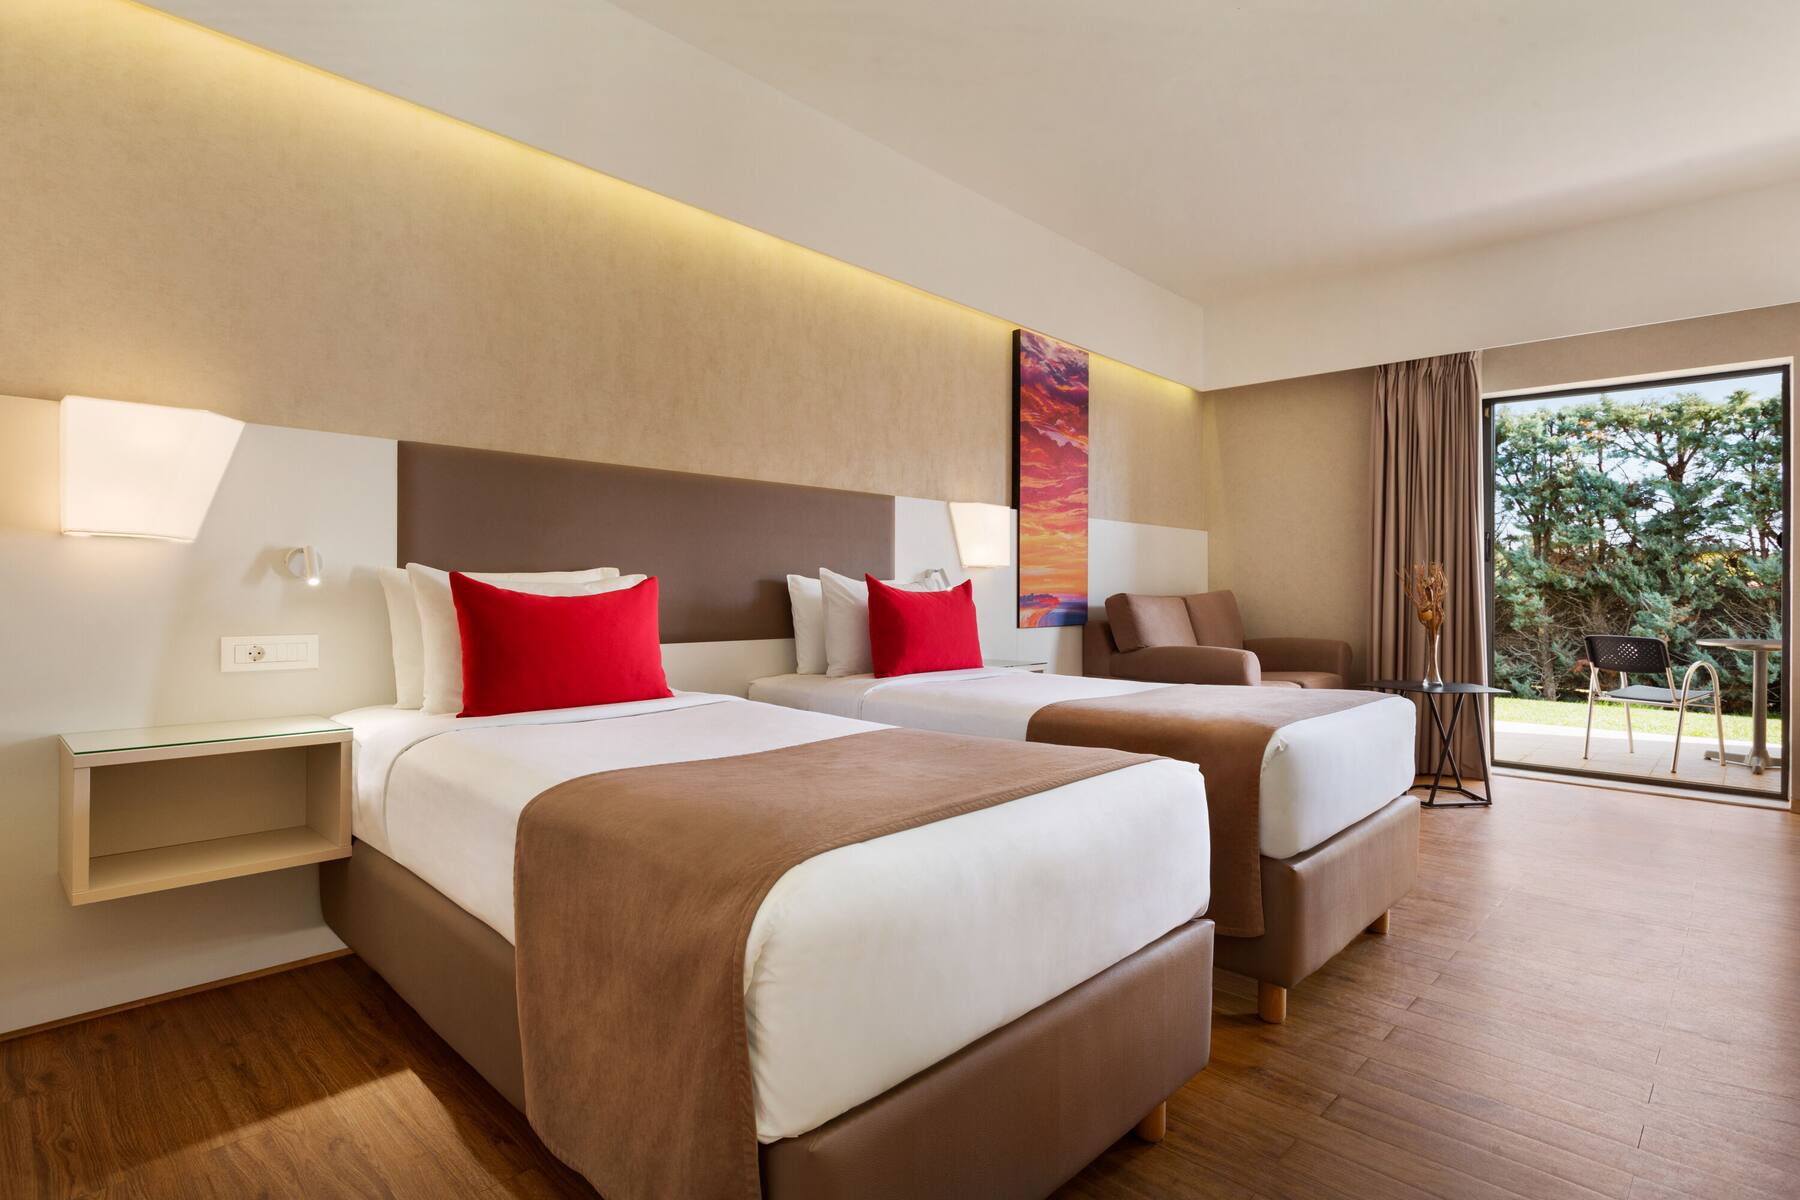 Hotel Ramada Plaza Thraki room twin beds.jpg